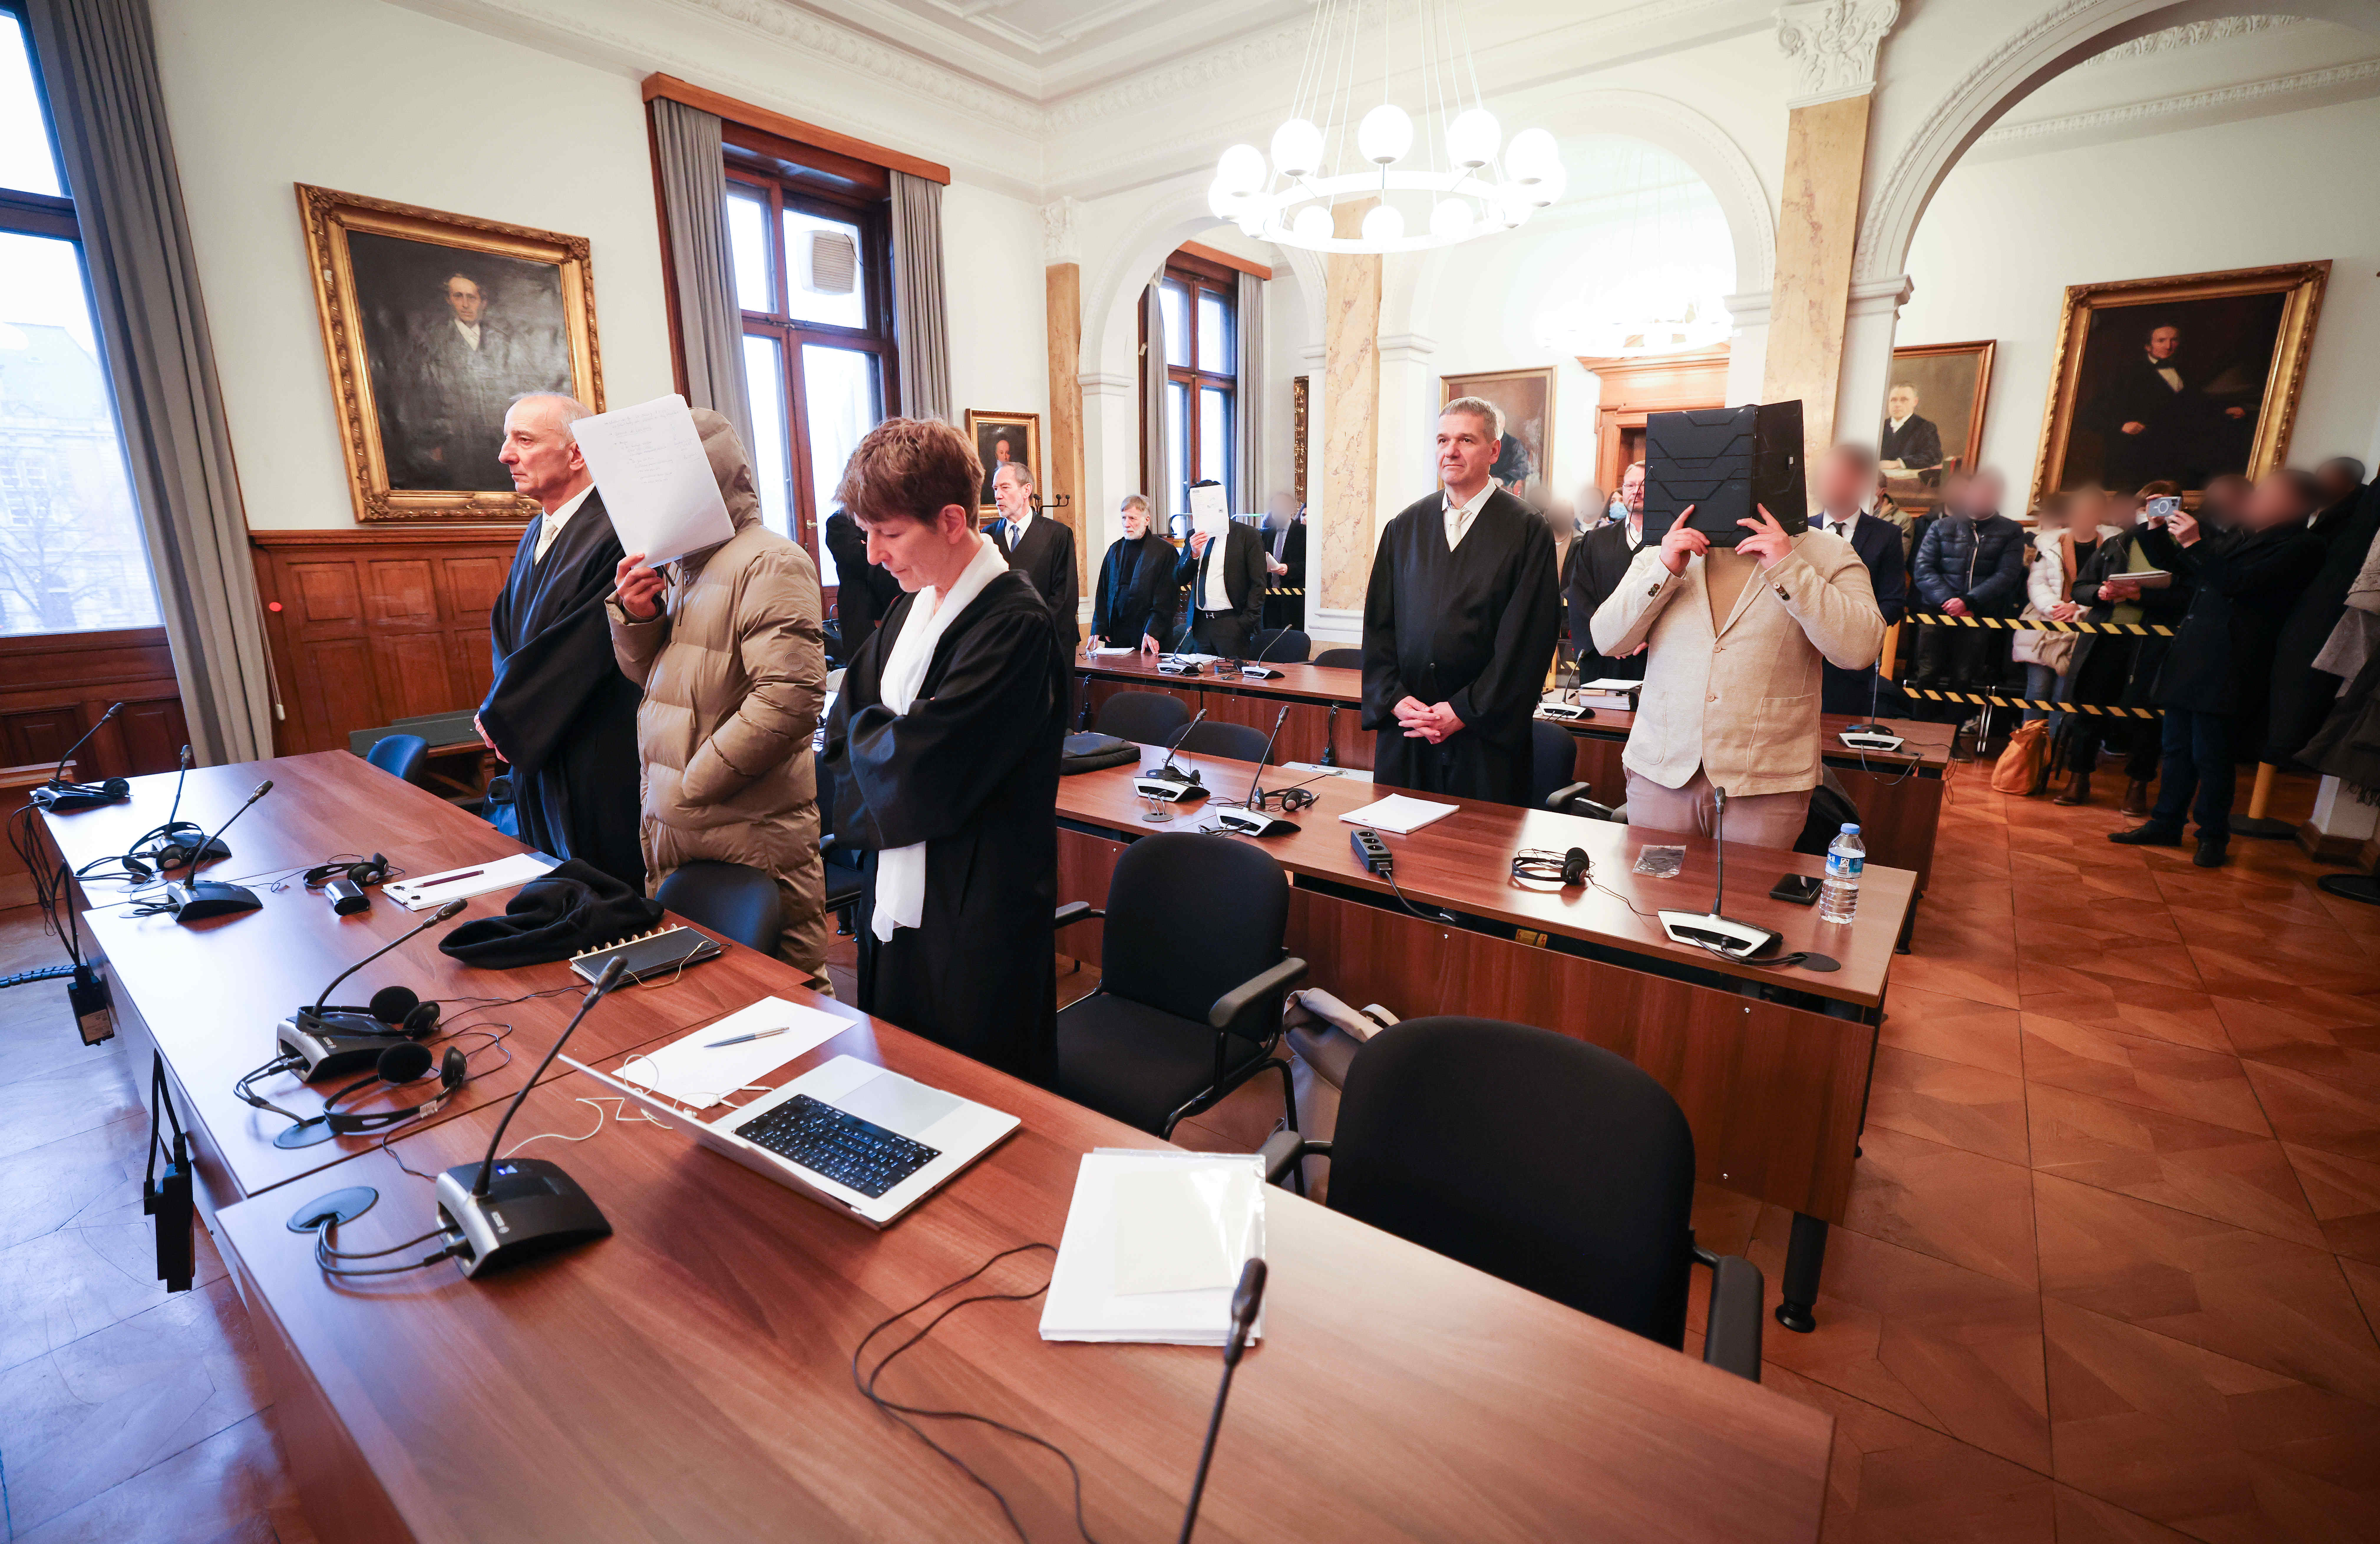 Die Angeklagten und ihre Anwälte stehen im Gerichtssaal im Ziviljustizgebäude in Hamburg.